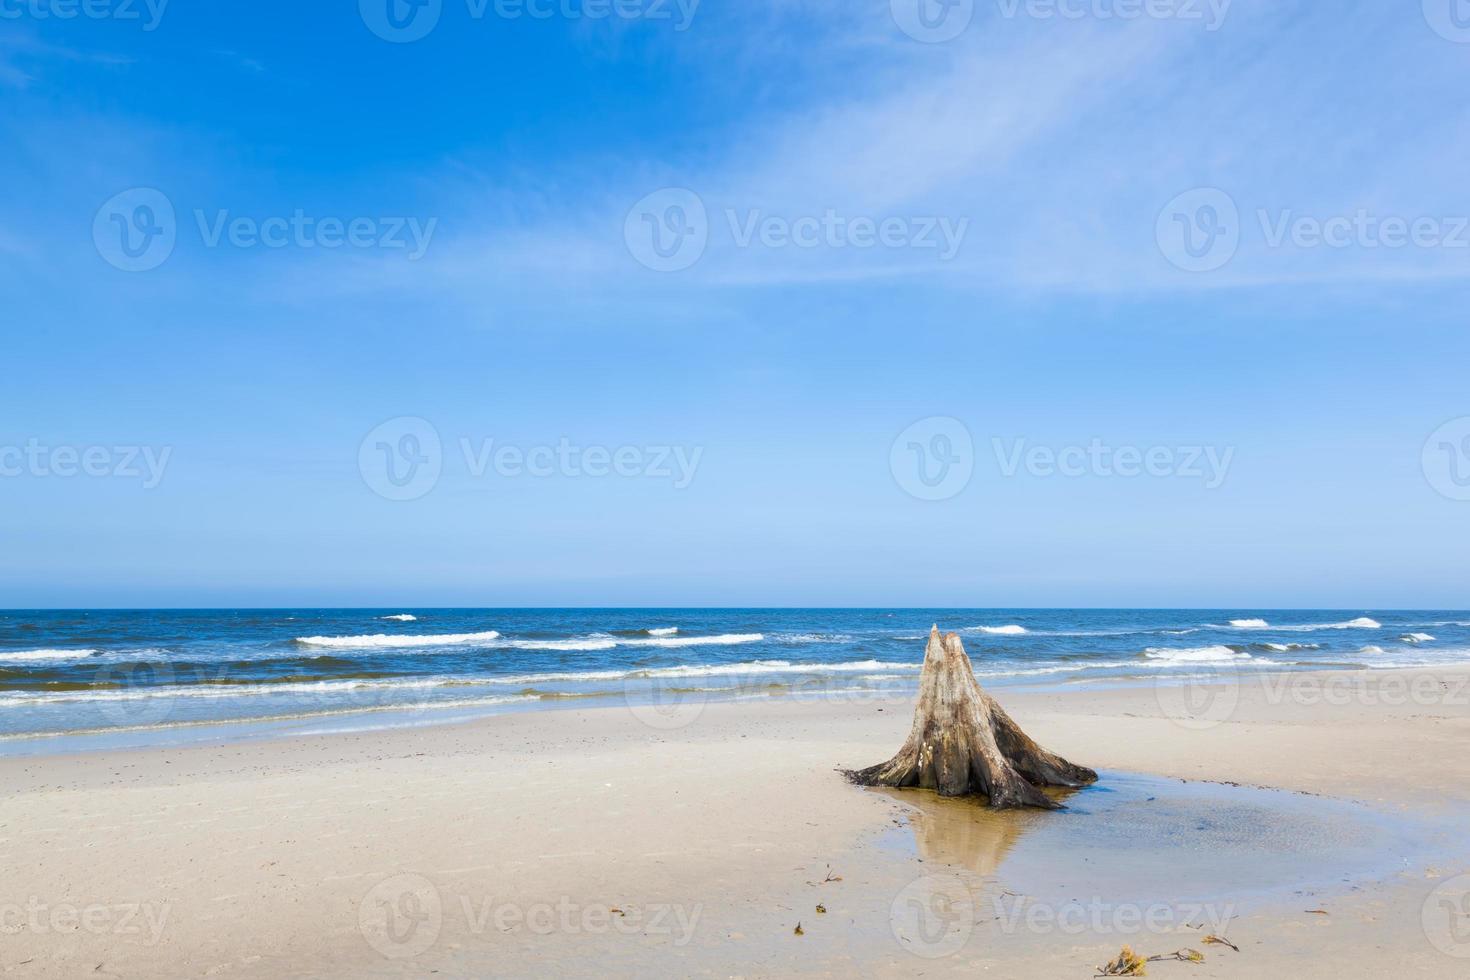 Troncos de árboles de 3000 años en la playa después de la tormenta. parque nacional slowinski, mar báltico, polonia foto